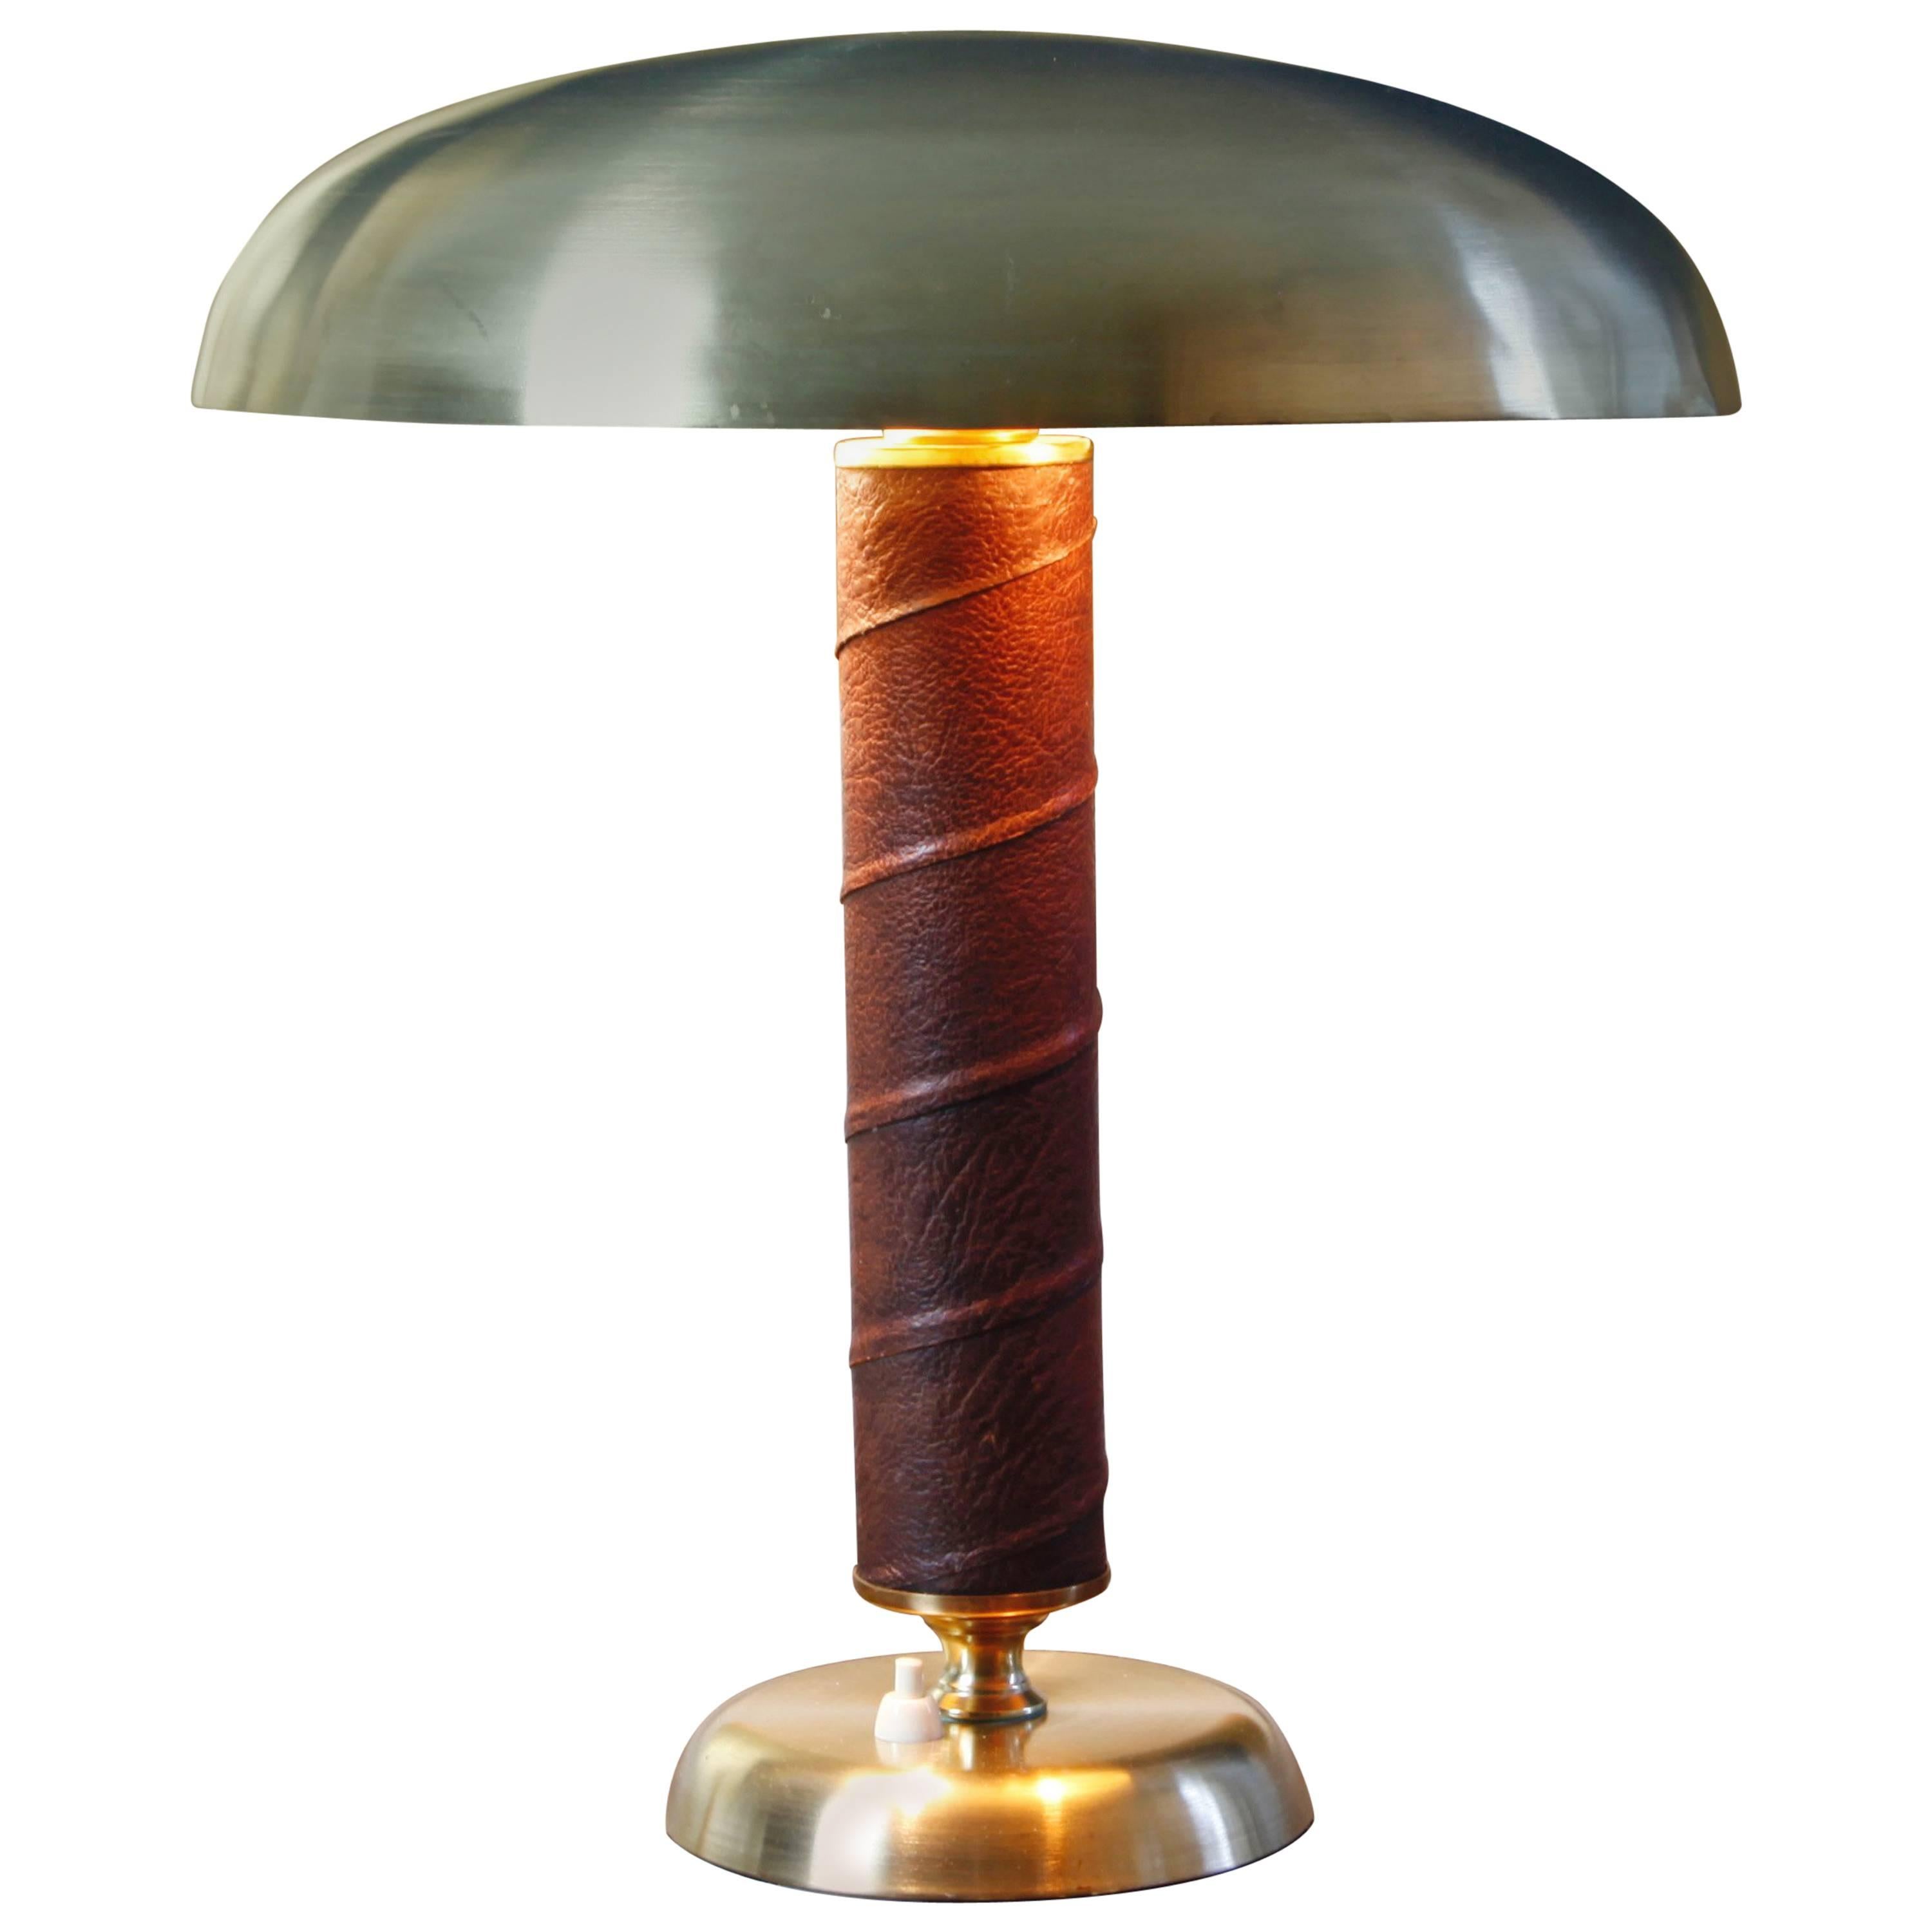 Stylish Leather-Wrapped Swedish Desk Lamp